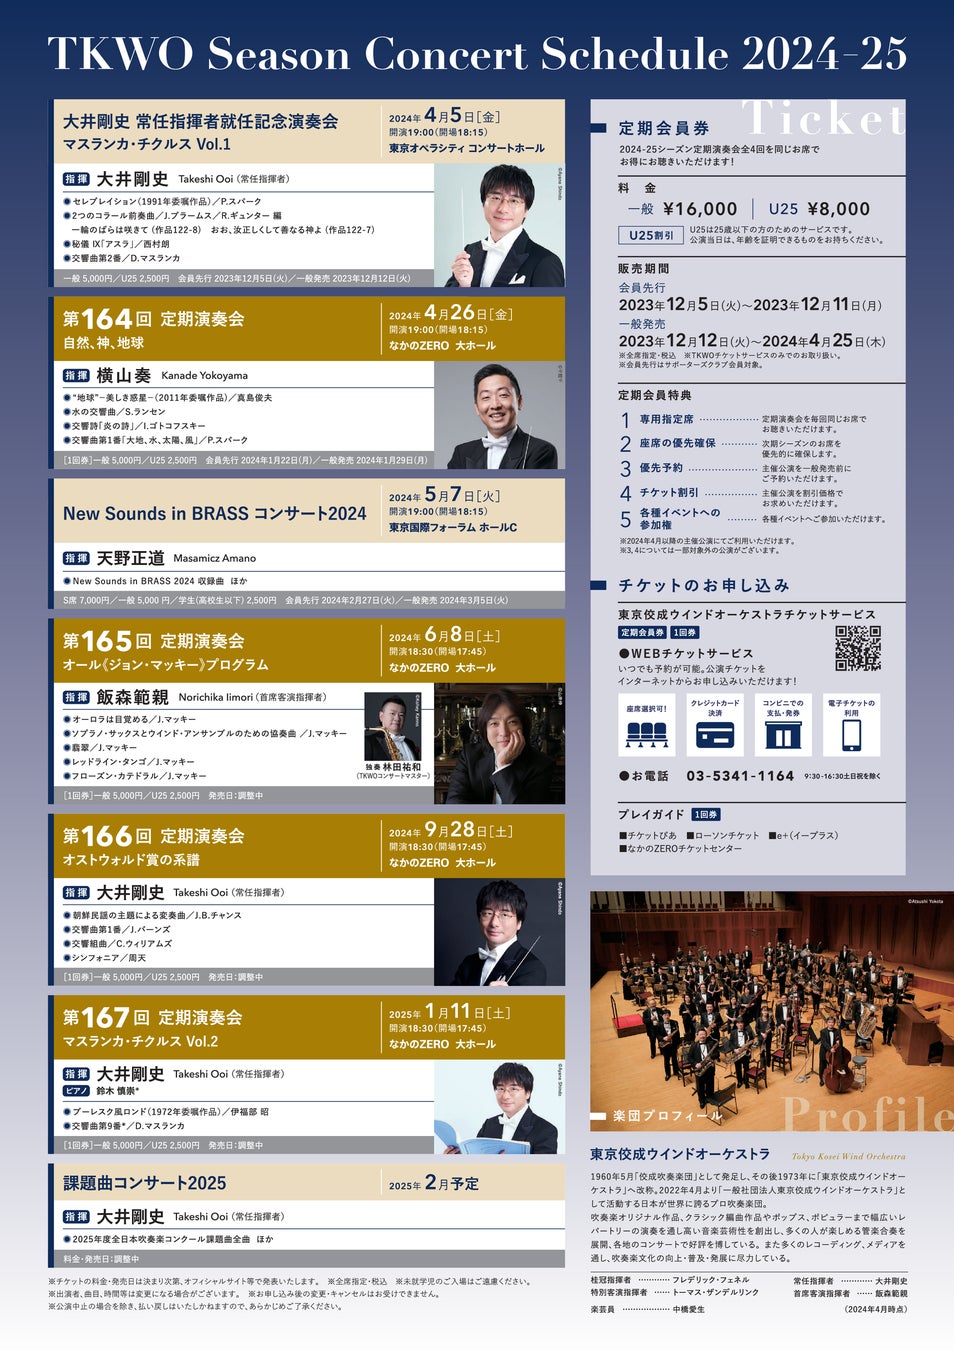 東京佼成ウインドオーケストラ「2024-25シーズンラインナップ」および「新指揮者等体制」発表